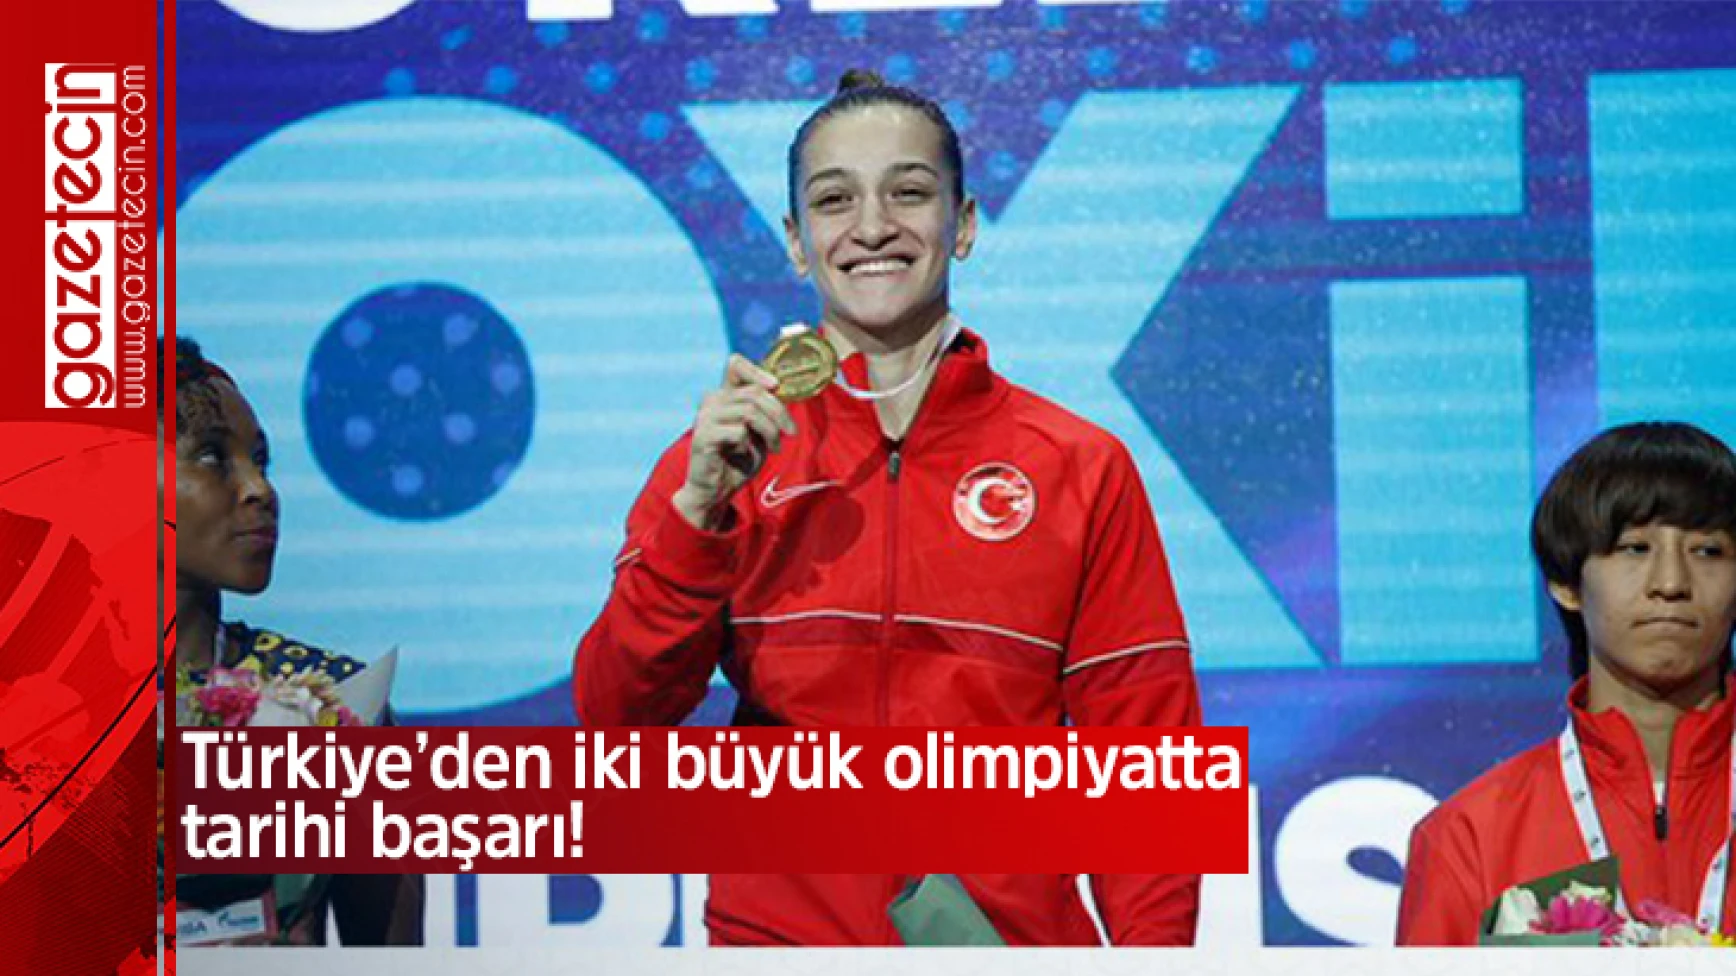 Türkiye’den iki büyük olimpiyatta tarihi başarı